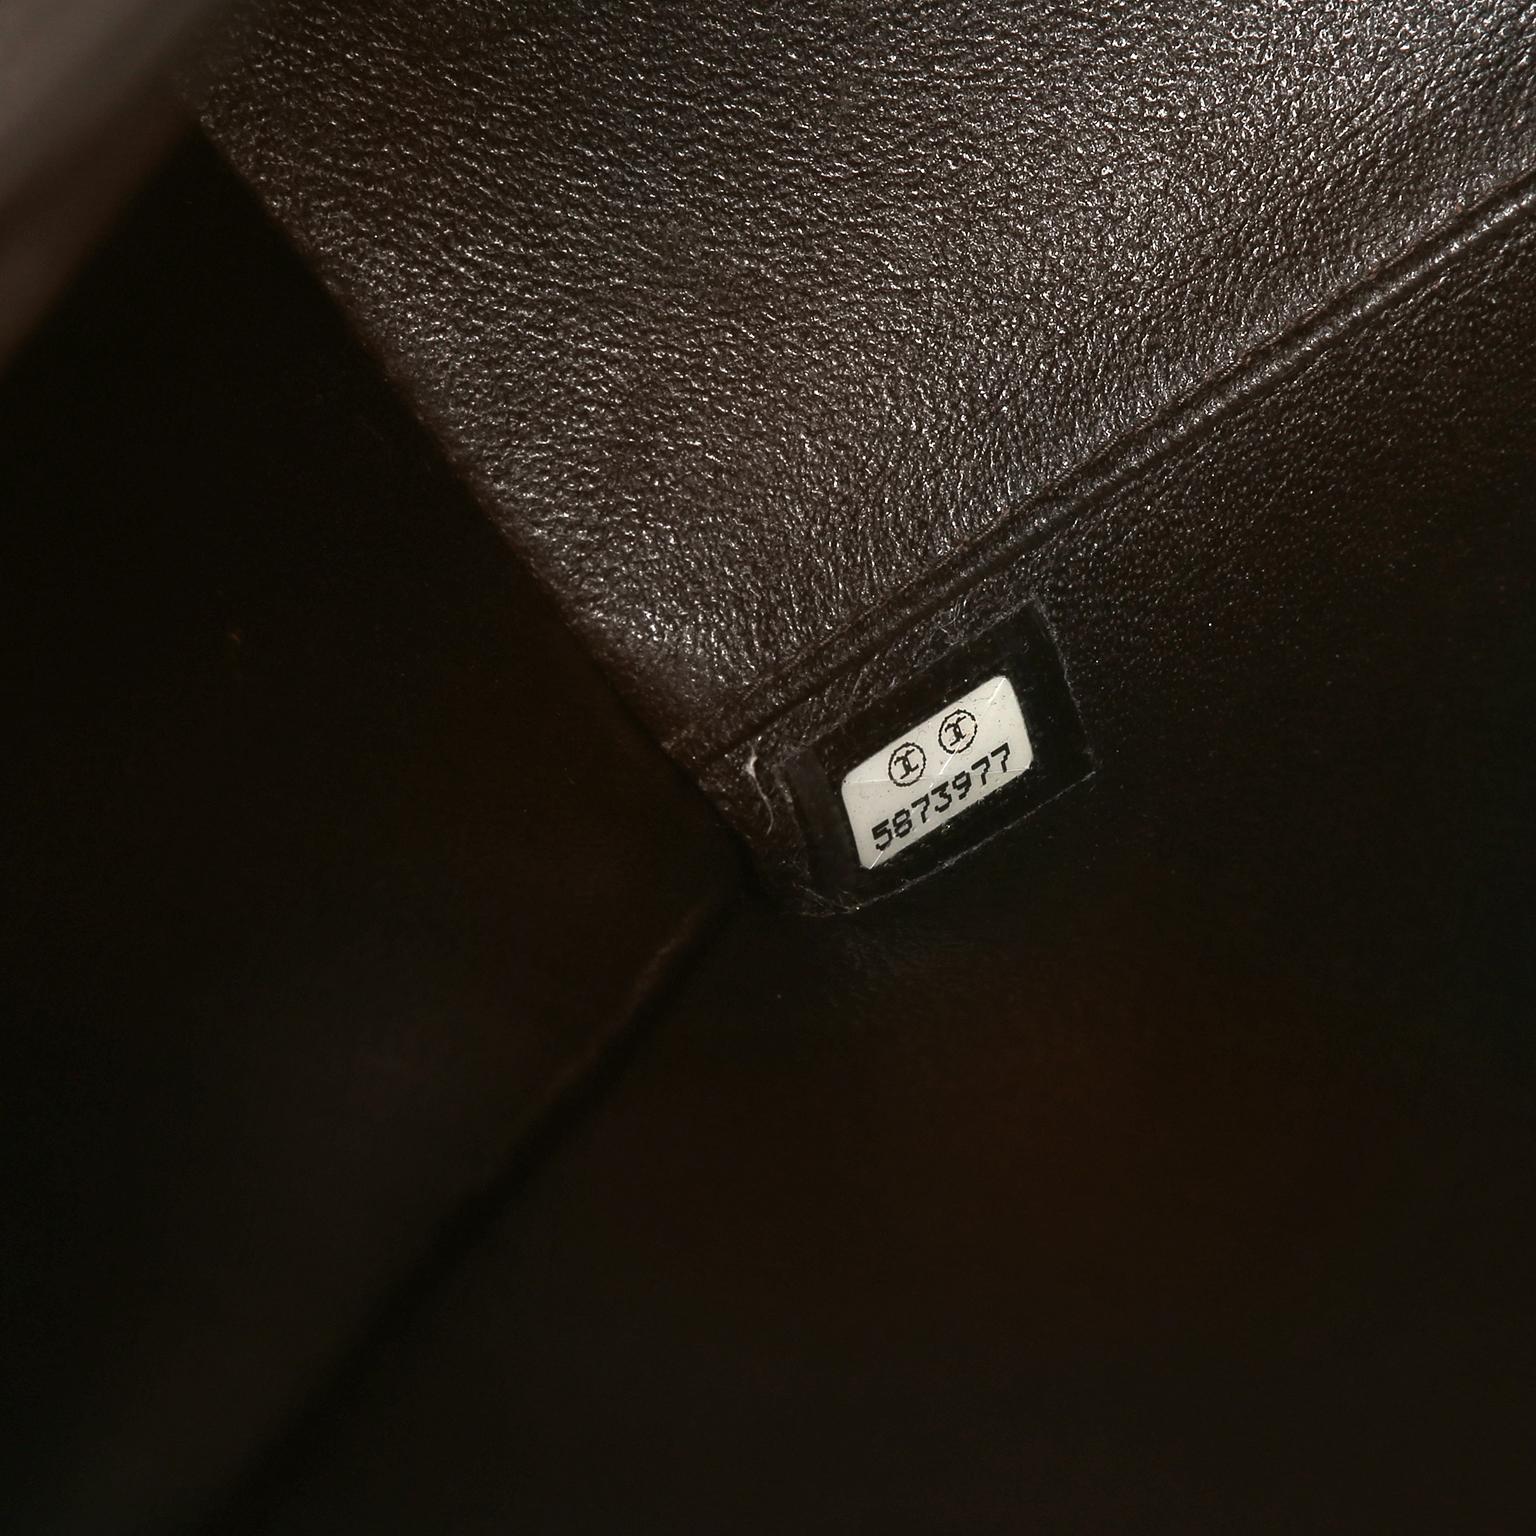 Chanel Brown Leather Flat Stitched Shoulder Bag 5